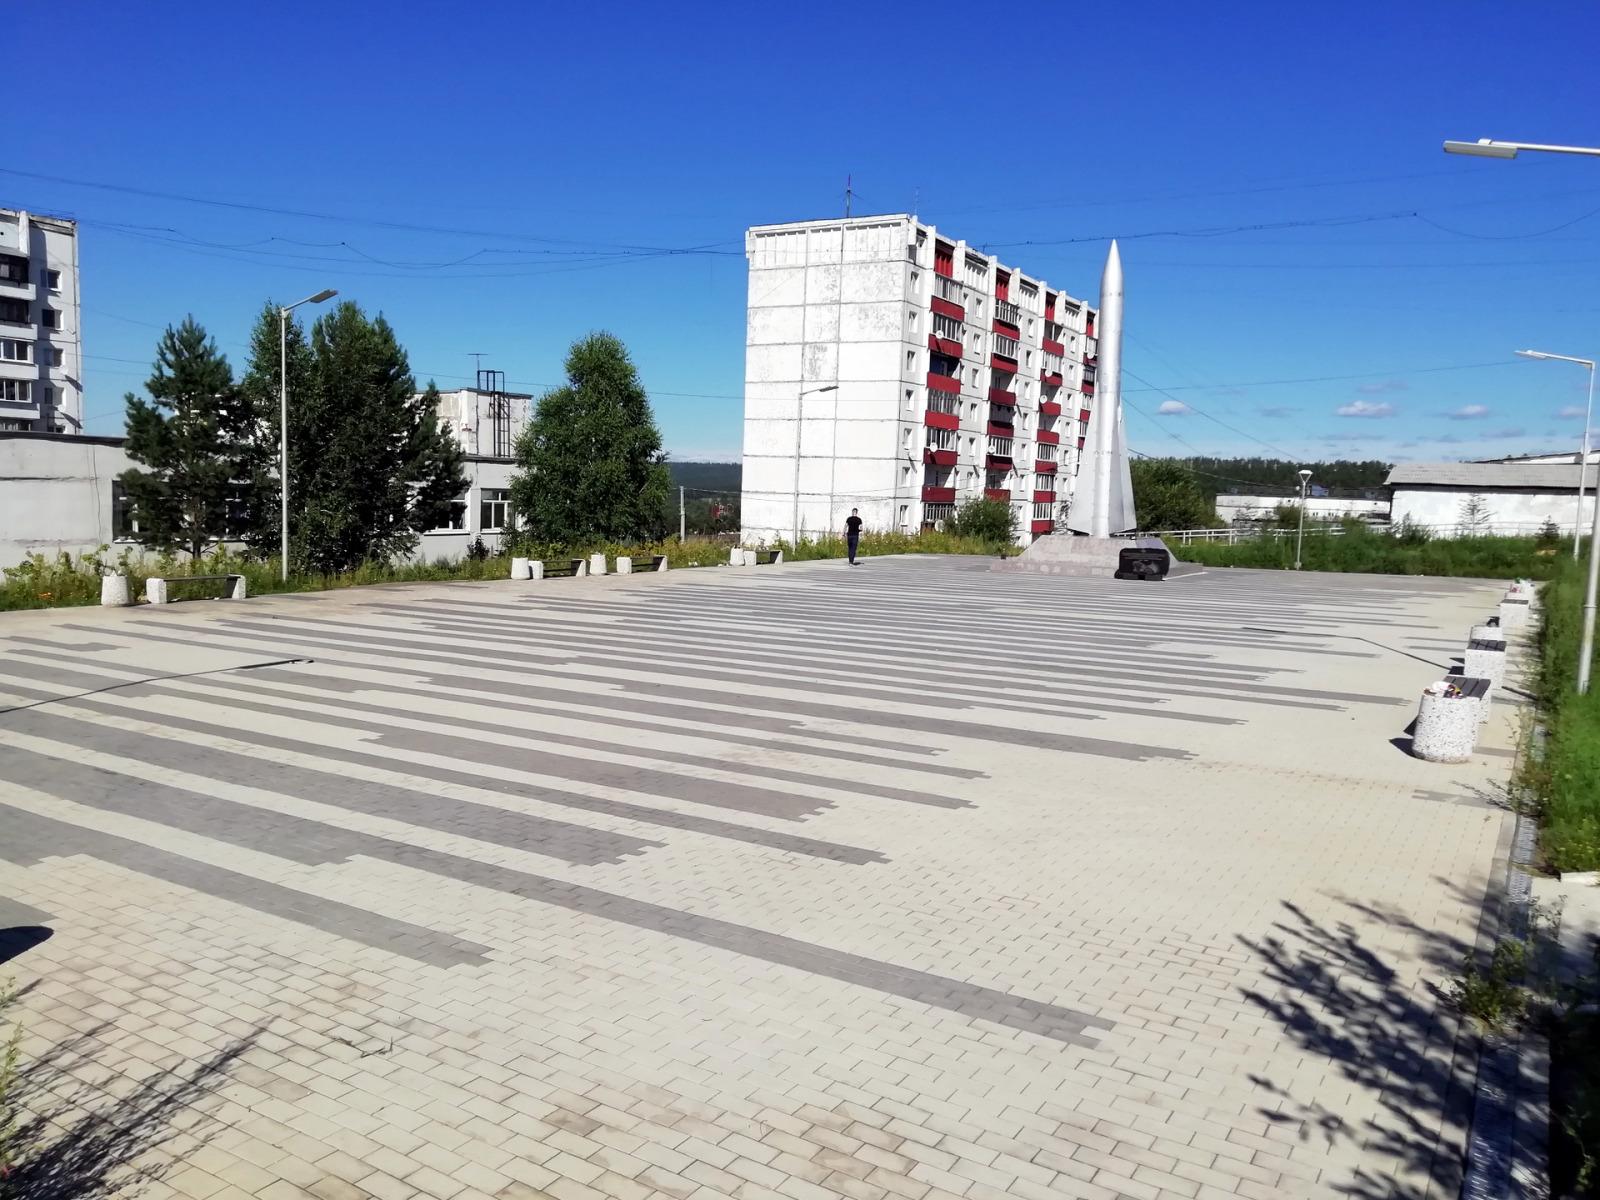 Зона центральной лестницы мкрн. Зеленый, г. Иркутск, 2019 г.